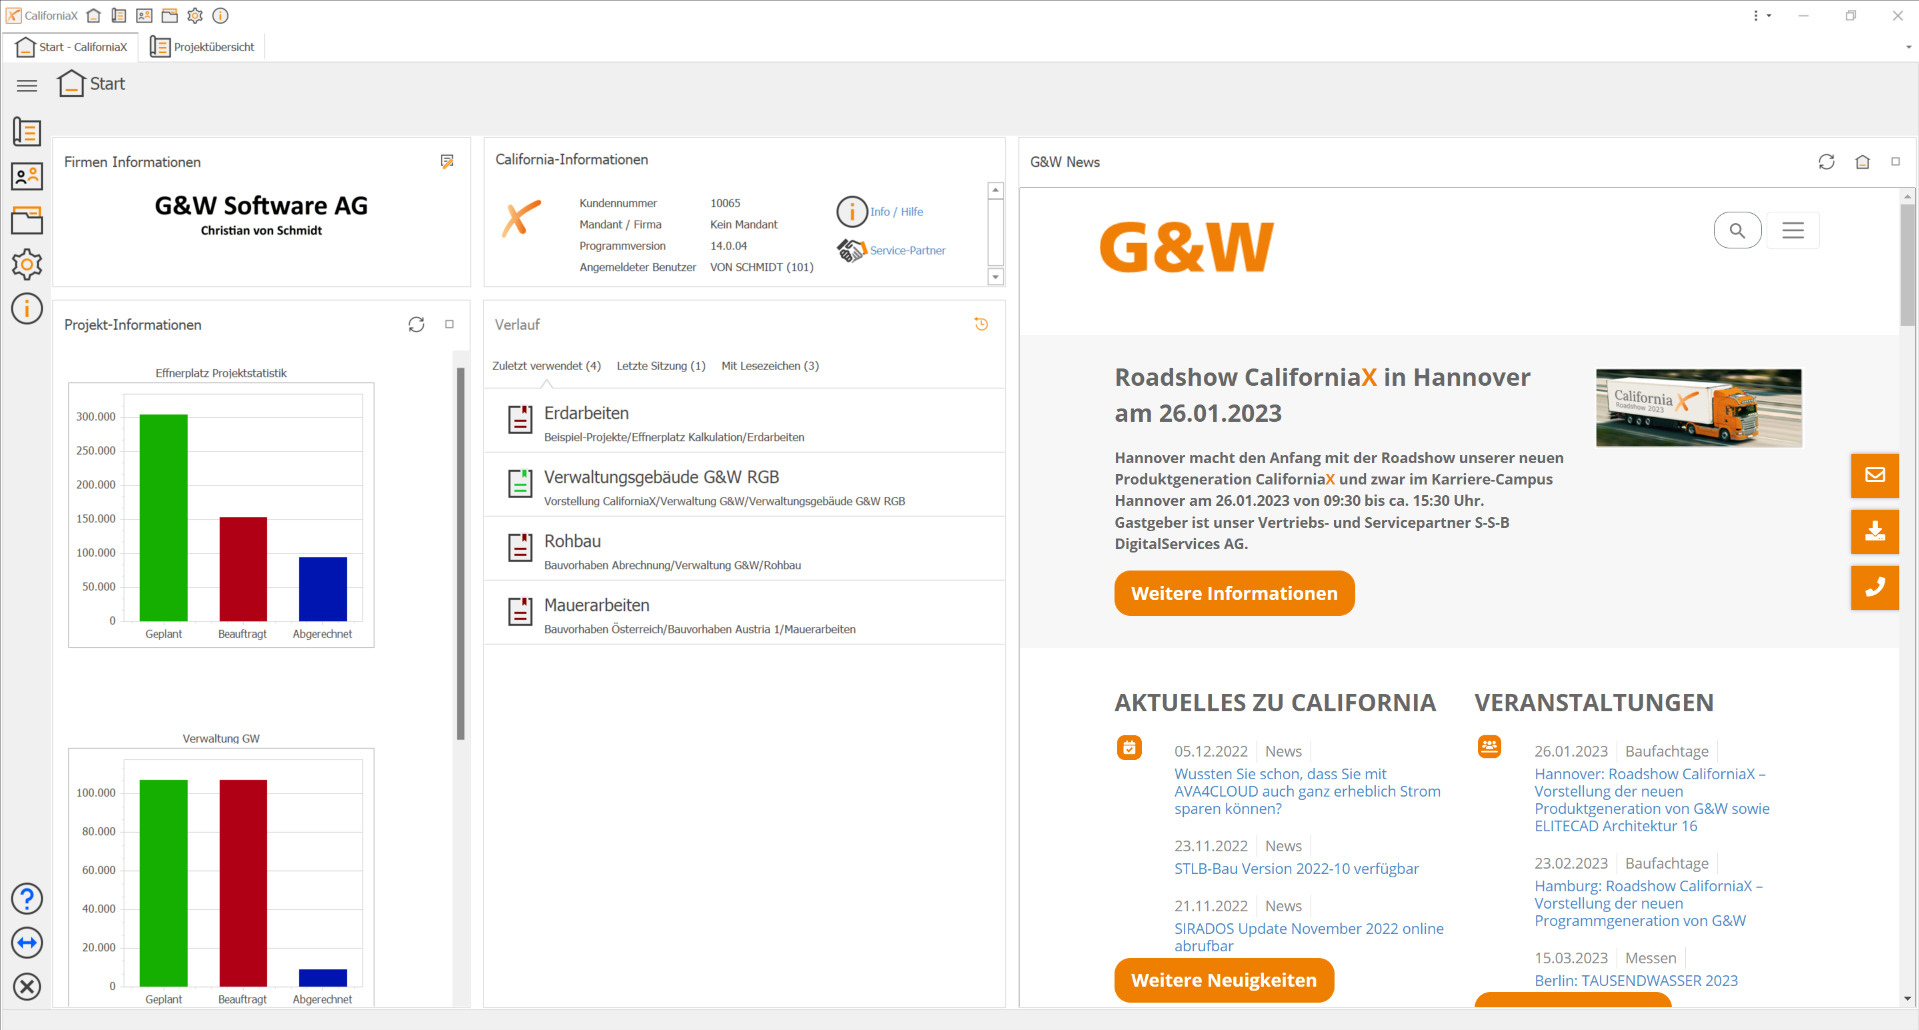 Dashboard mit Projektdaten, Bürokommunikation und aktuellen G&W-Nachrichten